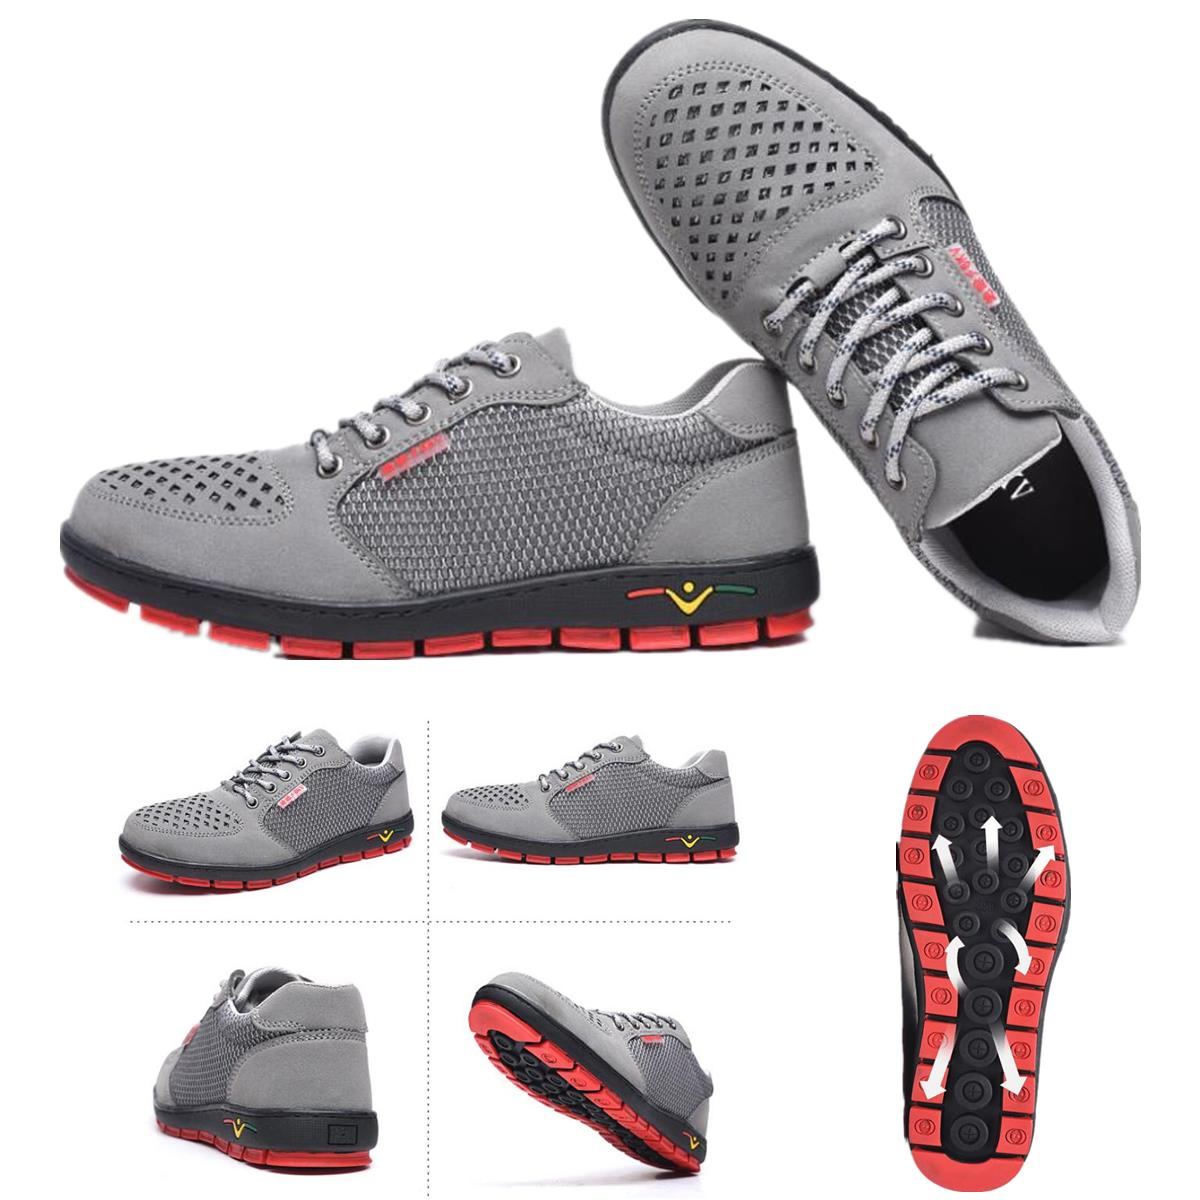 Zapatillas deportivas con aislamiento antideslizante, antiestático, para uso casual al aire libre, senderismo, trabajo, soldadura y mosaico.